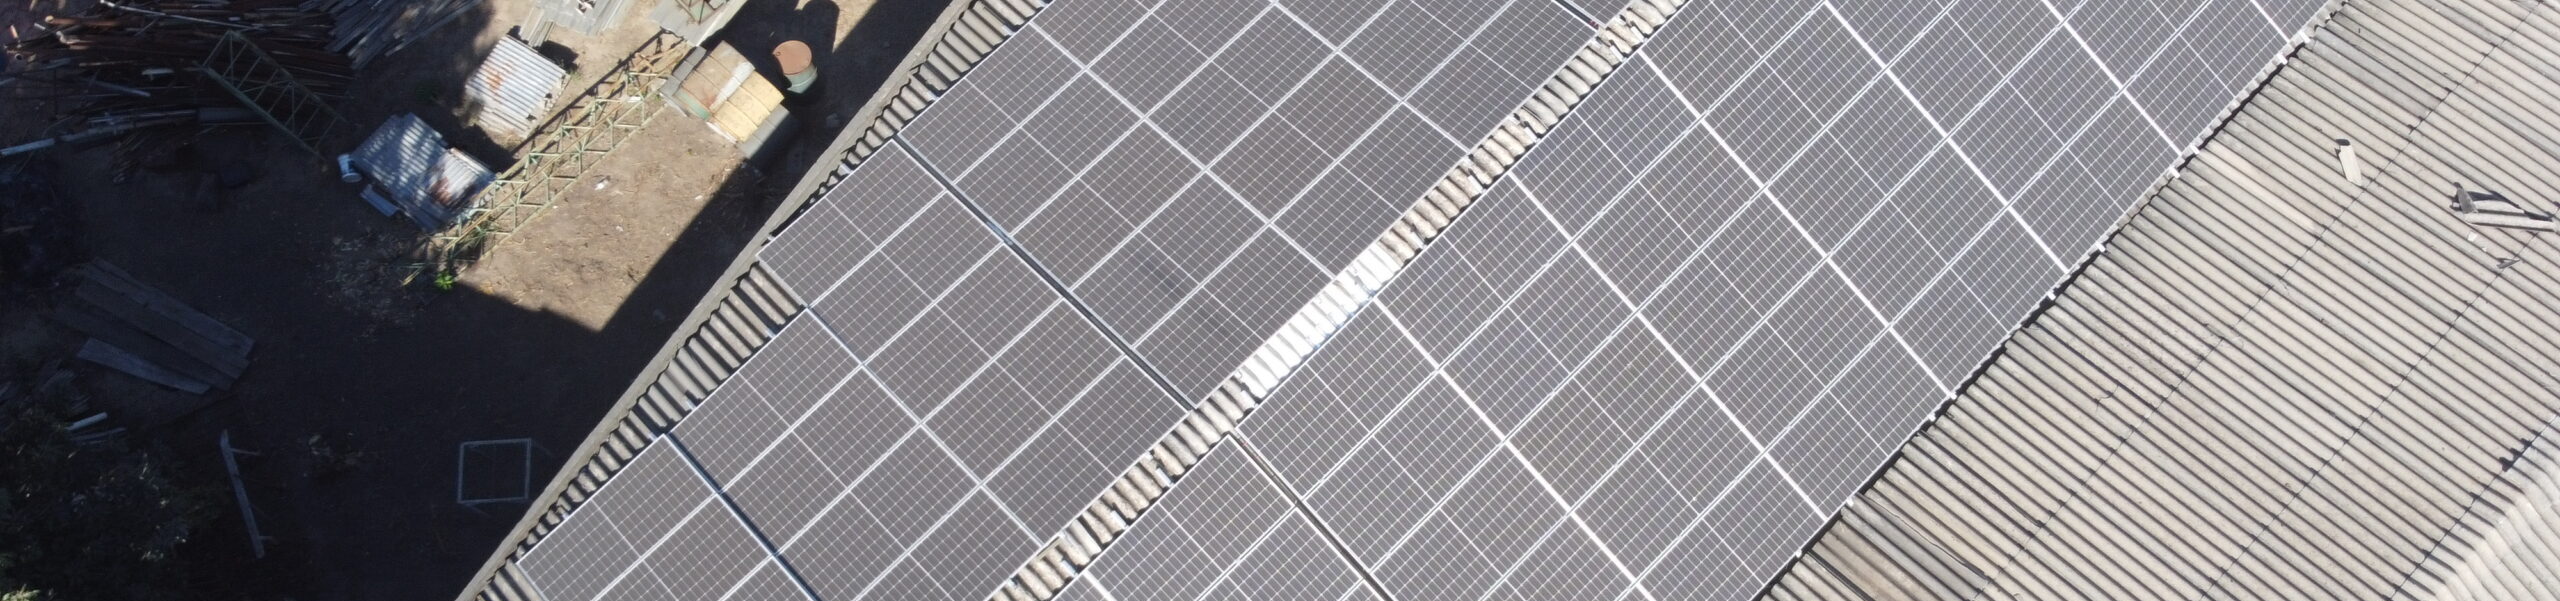 placas solares - Mercado de energia solar no Brasil: tudo o que você precisa saber